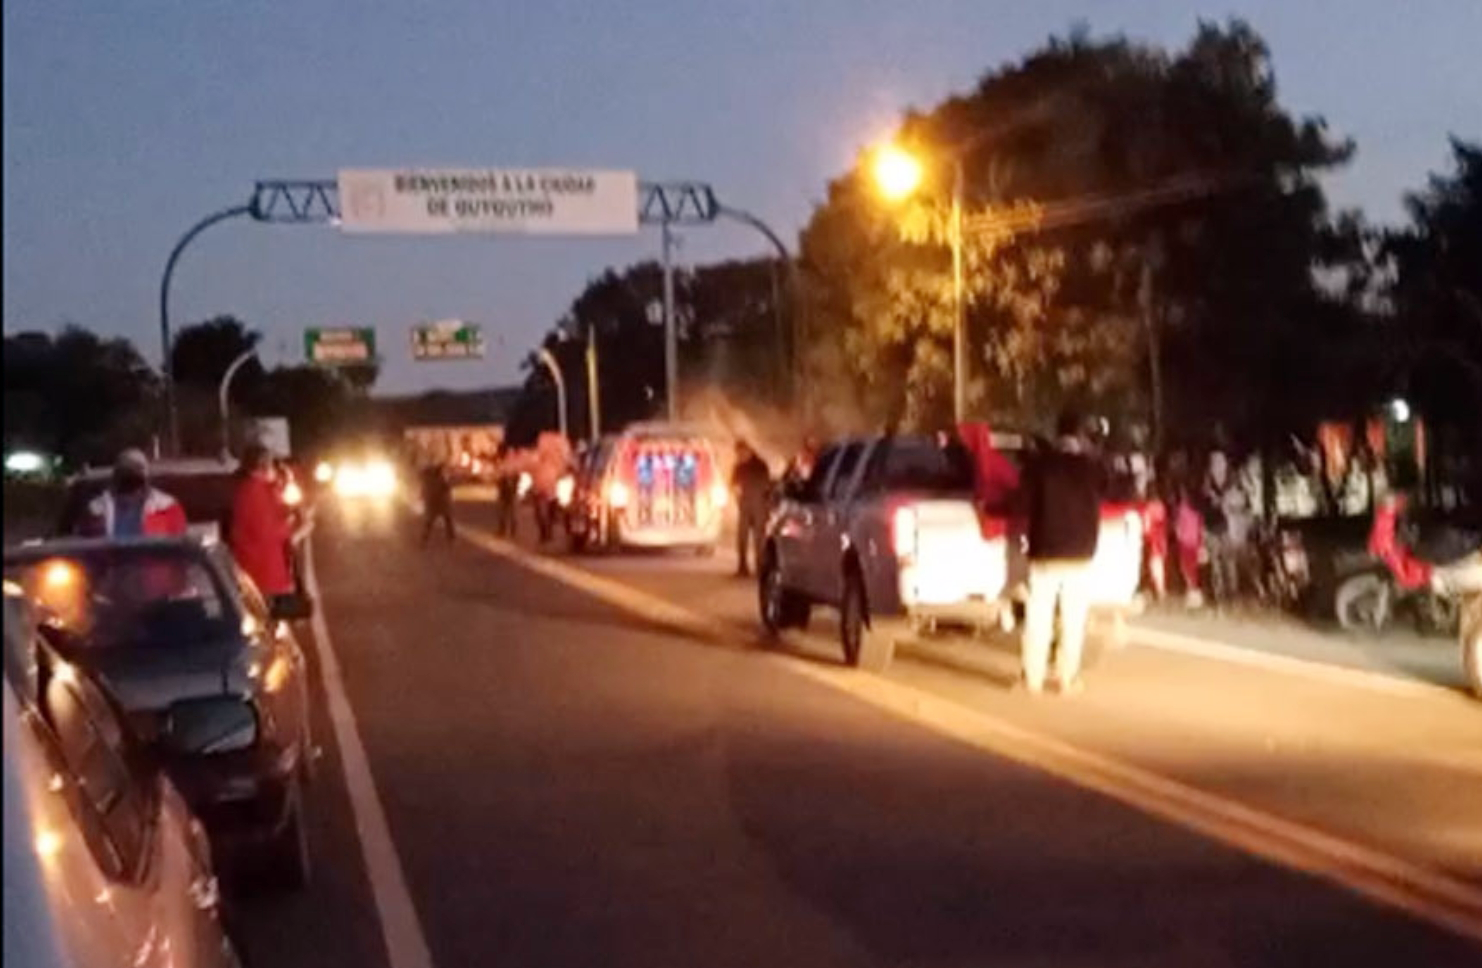 La caravana organizada en Quyquyhó por el diputado Esteban Martín  Samaniego y  la intendenta Patricia Corvalán causó polémica por la presencia de una ambulancia del Centro de Salud local.